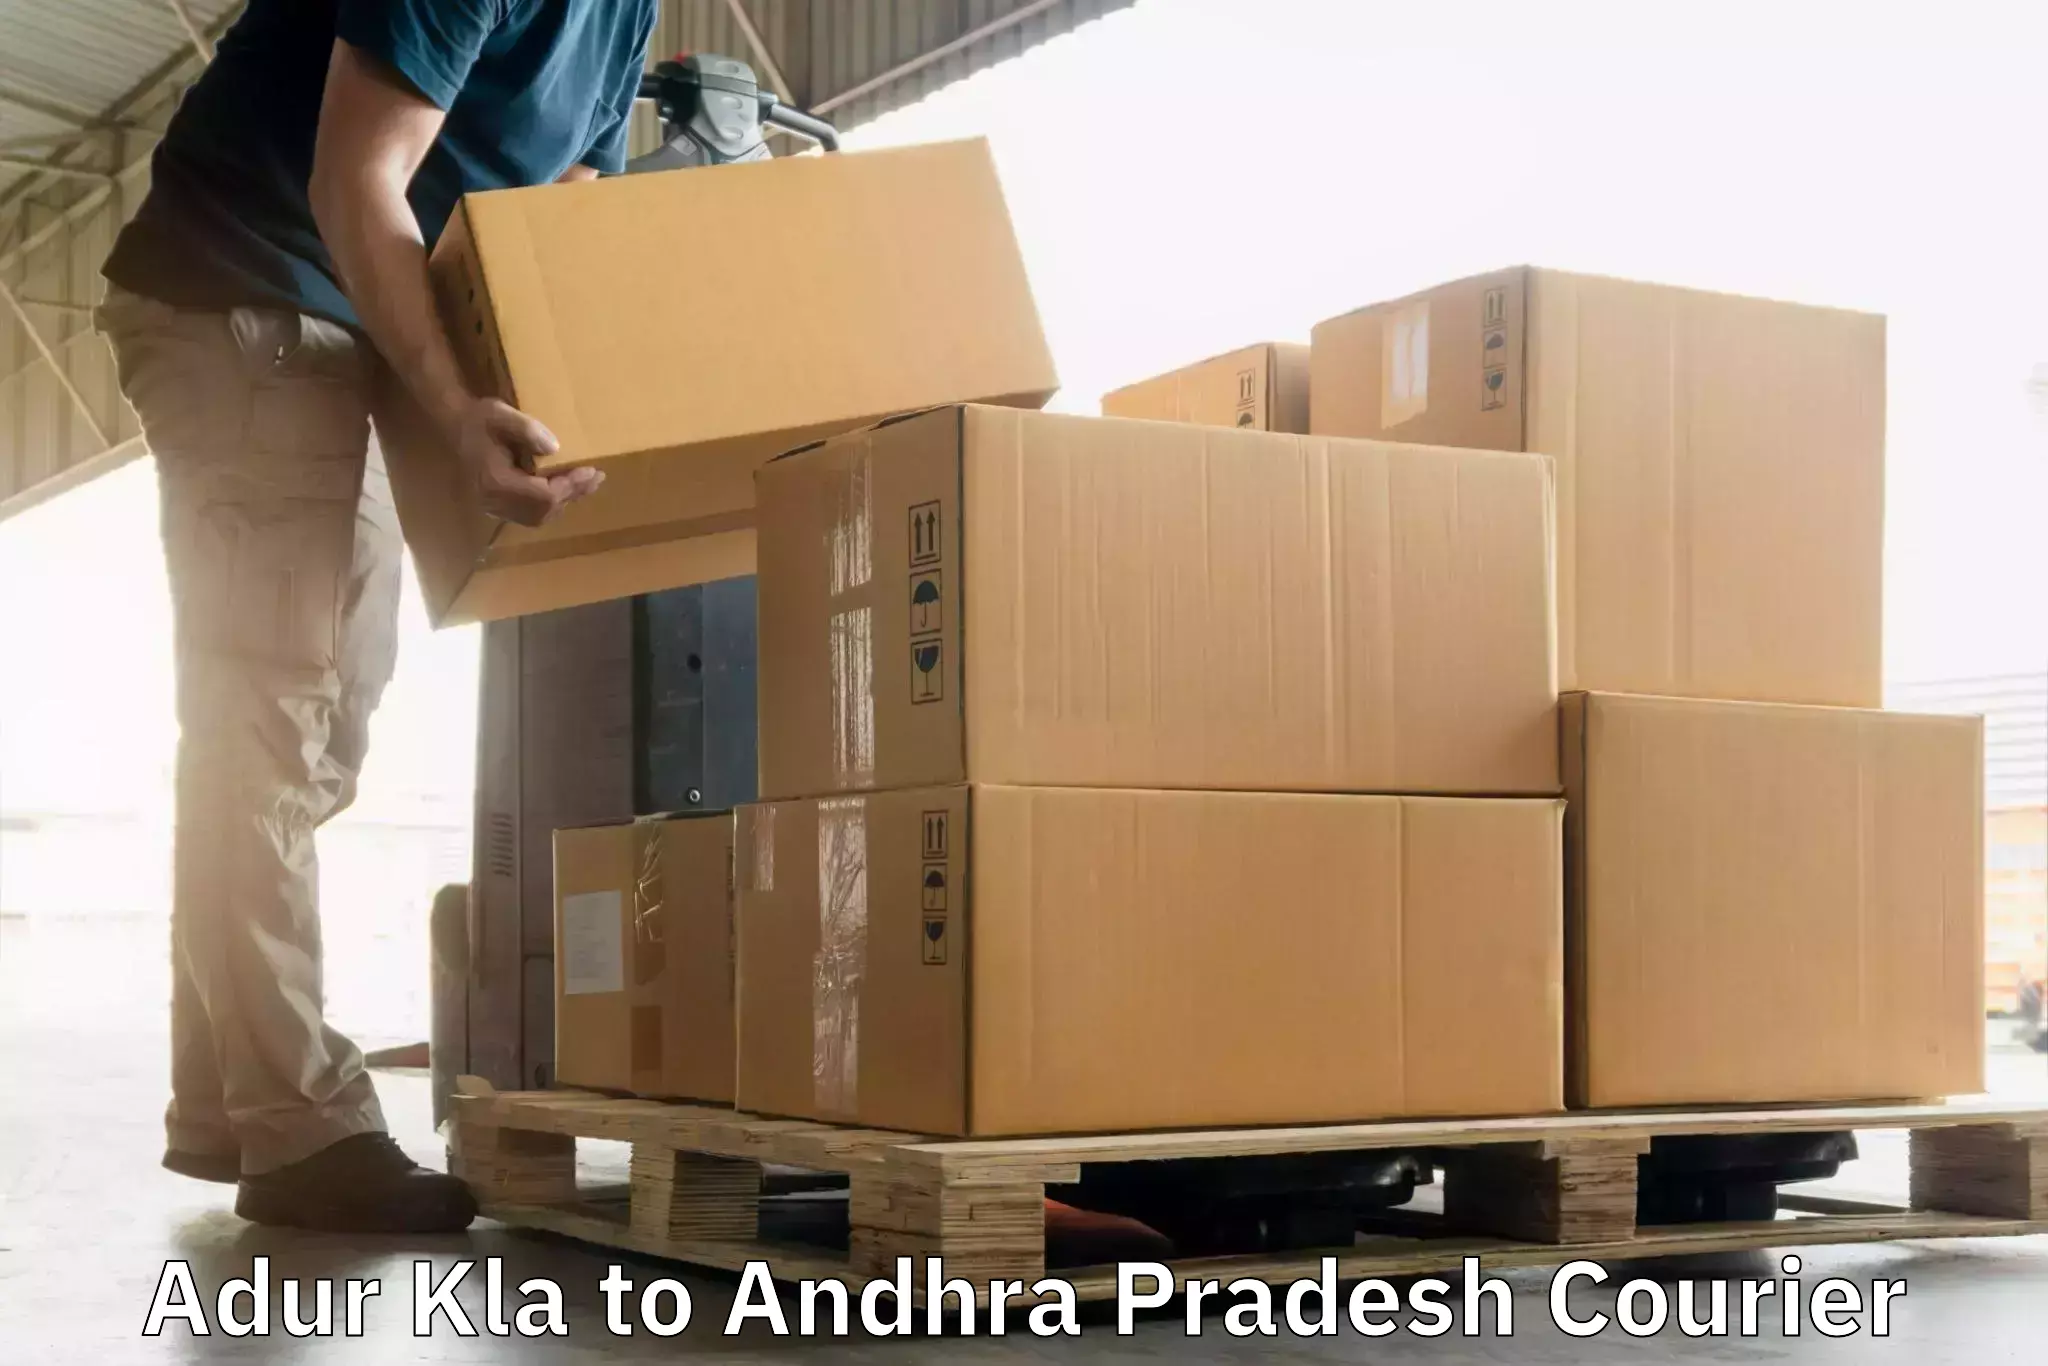 Sustainable courier practices Adur Kla to Martur